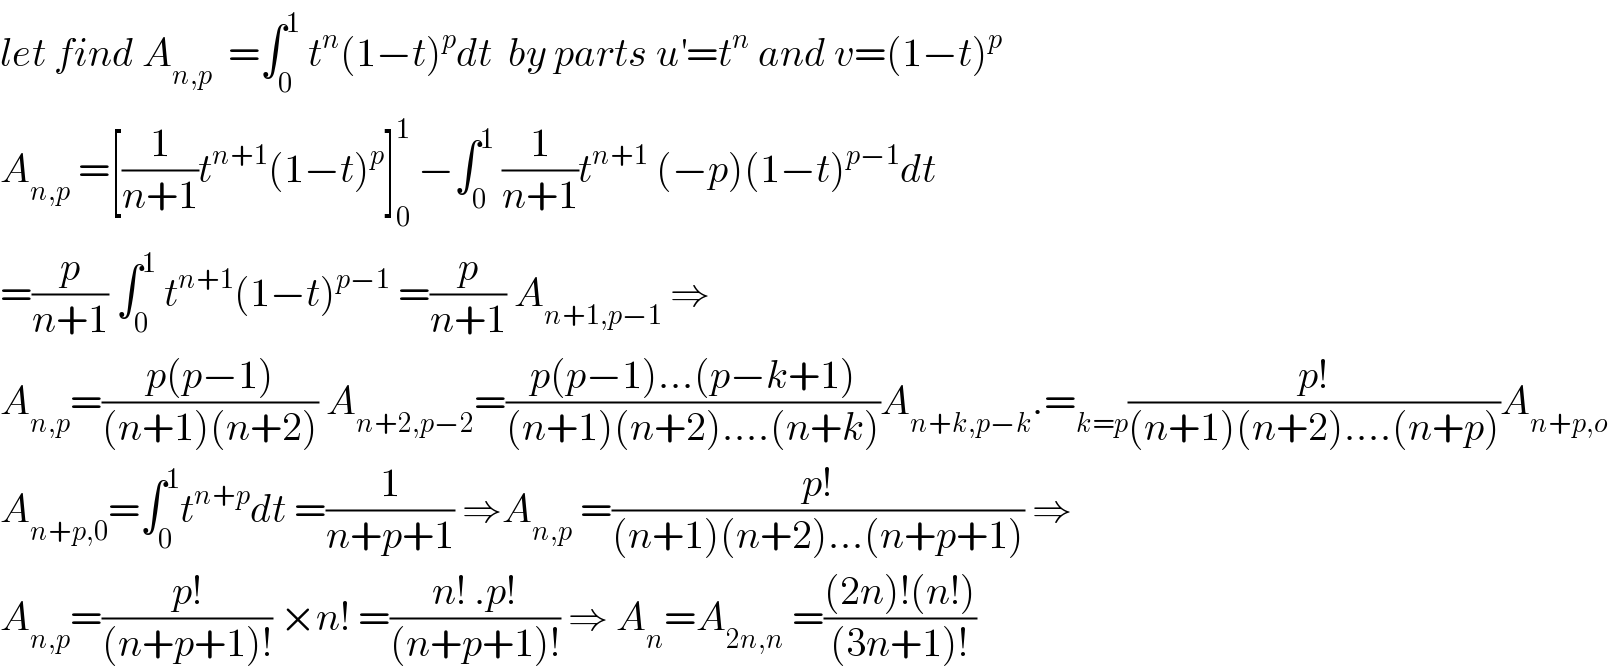 let find A_(n,p)   =∫_0 ^1  t^n (1−t)^p dt  by parts u^′ =t^n  and v=(1−t)^p   A_(n,p)  =[(1/(n+1))t^(n+1) (1−t)^p ]_0 ^1  −∫_0 ^1  (1/(n+1))t^(n+1)  (−p)(1−t)^(p−1) dt  =(p/(n+1)) ∫_0 ^1  t^(n+1) (1−t)^(p−1)  =(p/(n+1)) A_(n+1,p−1)  ⇒  A_(n,p) =((p(p−1))/((n+1)(n+2))) A_(n+2,p−2) =((p(p−1)...(p−k+1))/((n+1)(n+2)....(n+k)))A_(n+k,p−k) .=_(k=p) ((p!)/((n+1)(n+2)....(n+p)))A_(n+p,o)   A_(n+p,0) =∫_0 ^1 t^(n+p) dt =(1/(n+p+1)) ⇒A_(n,p)  =((p!)/((n+1)(n+2)...(n+p+1))) ⇒  A_(n,p) =((p!)/((n+p+1)!)) ×n! =((n! .p!)/((n+p+1)!)) ⇒ A_n =A_(2n,n)  =(((2n)!(n!))/((3n+1)!))  